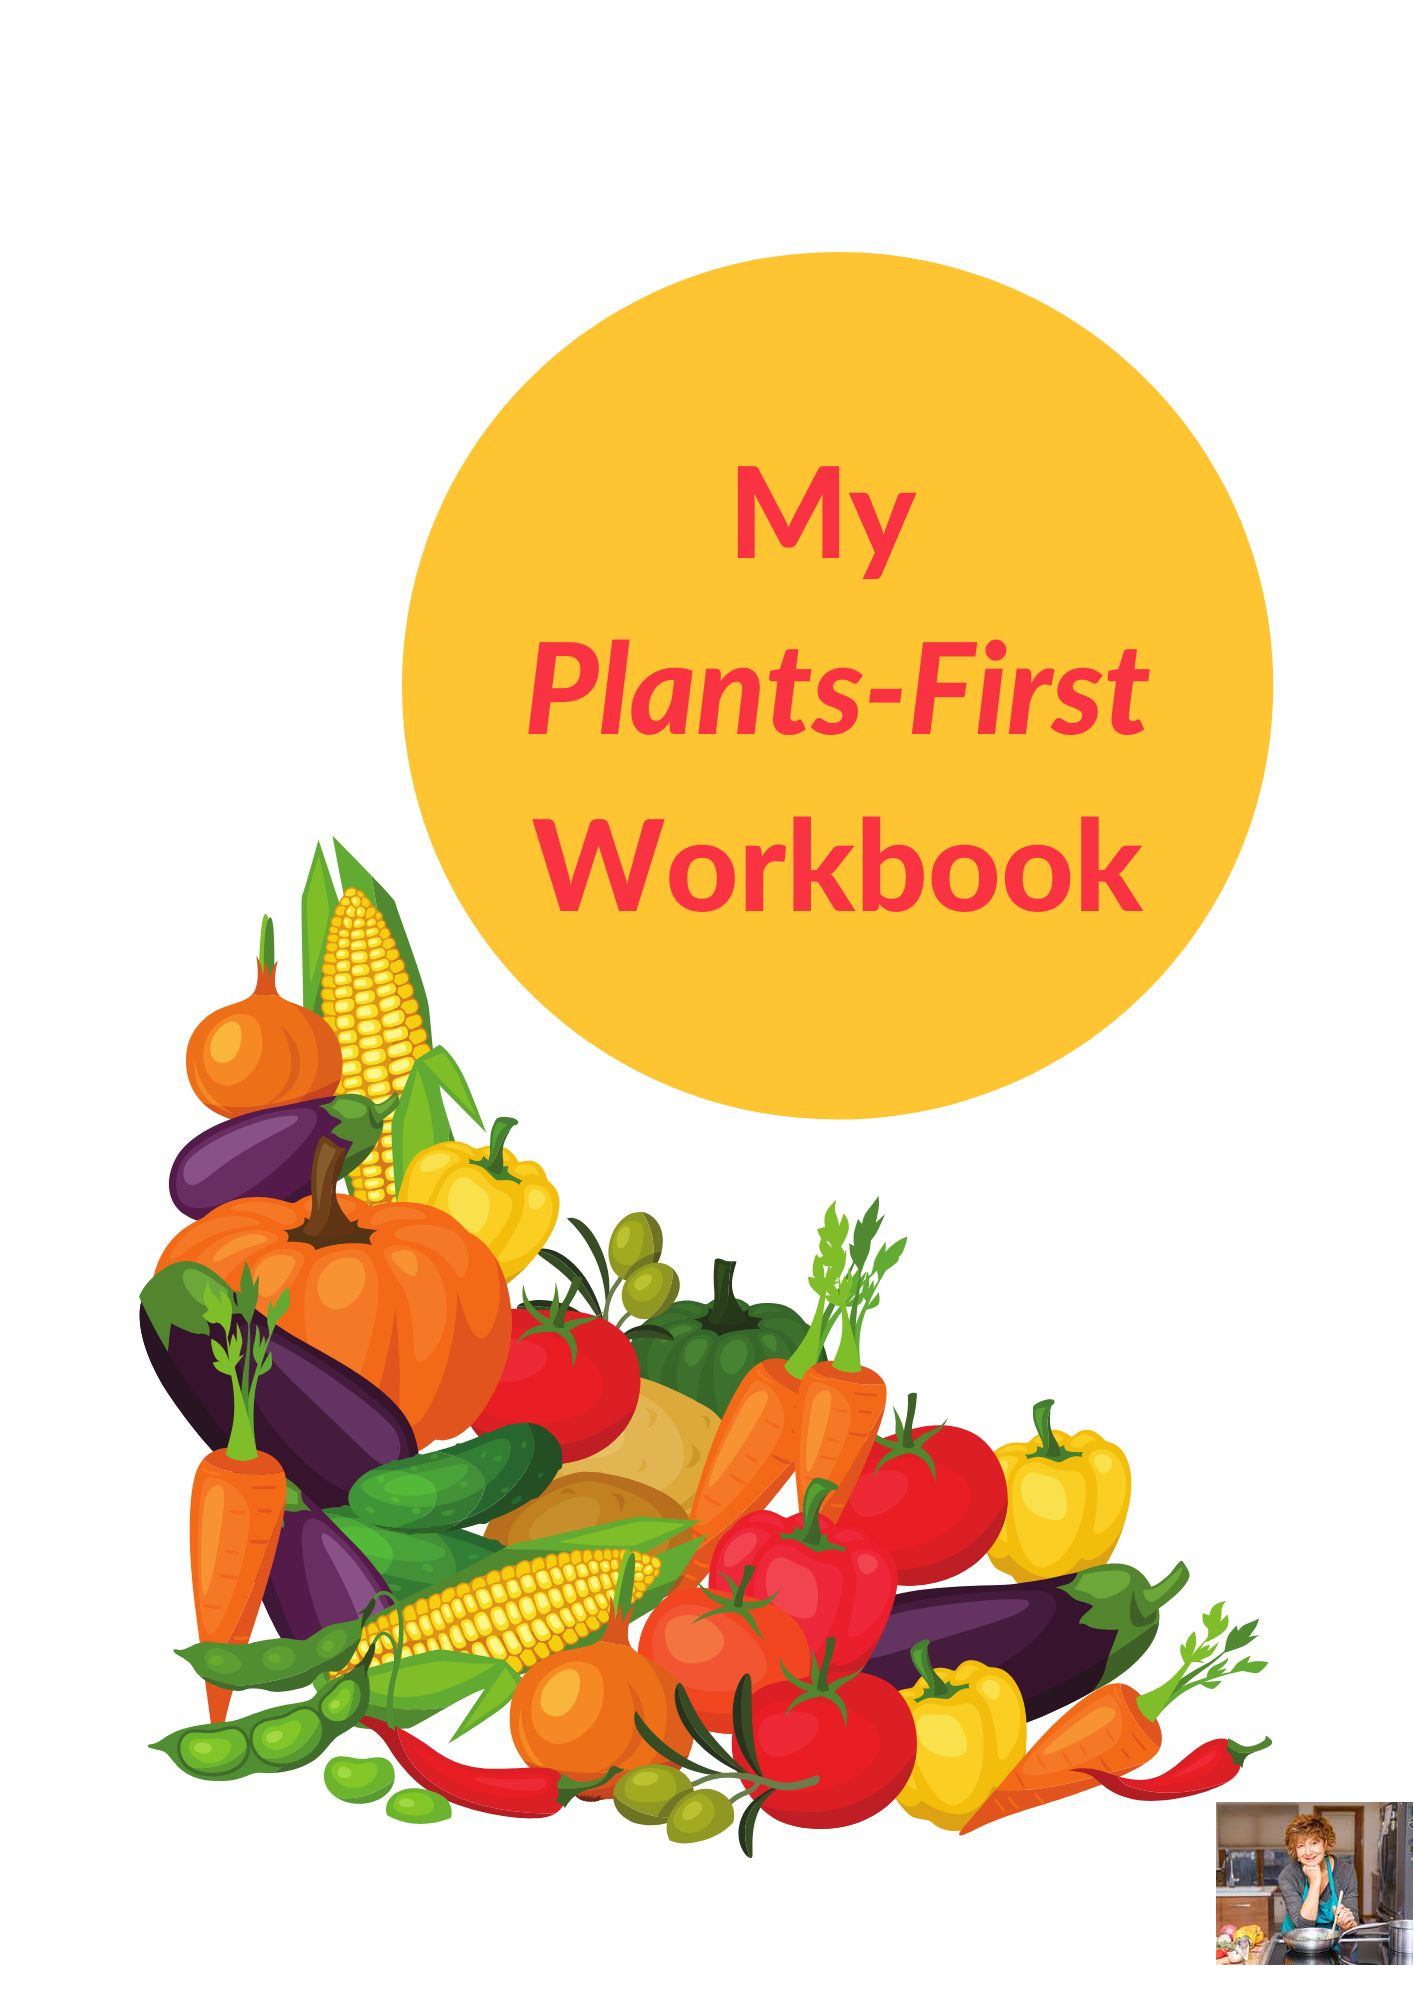 plant-based workbook